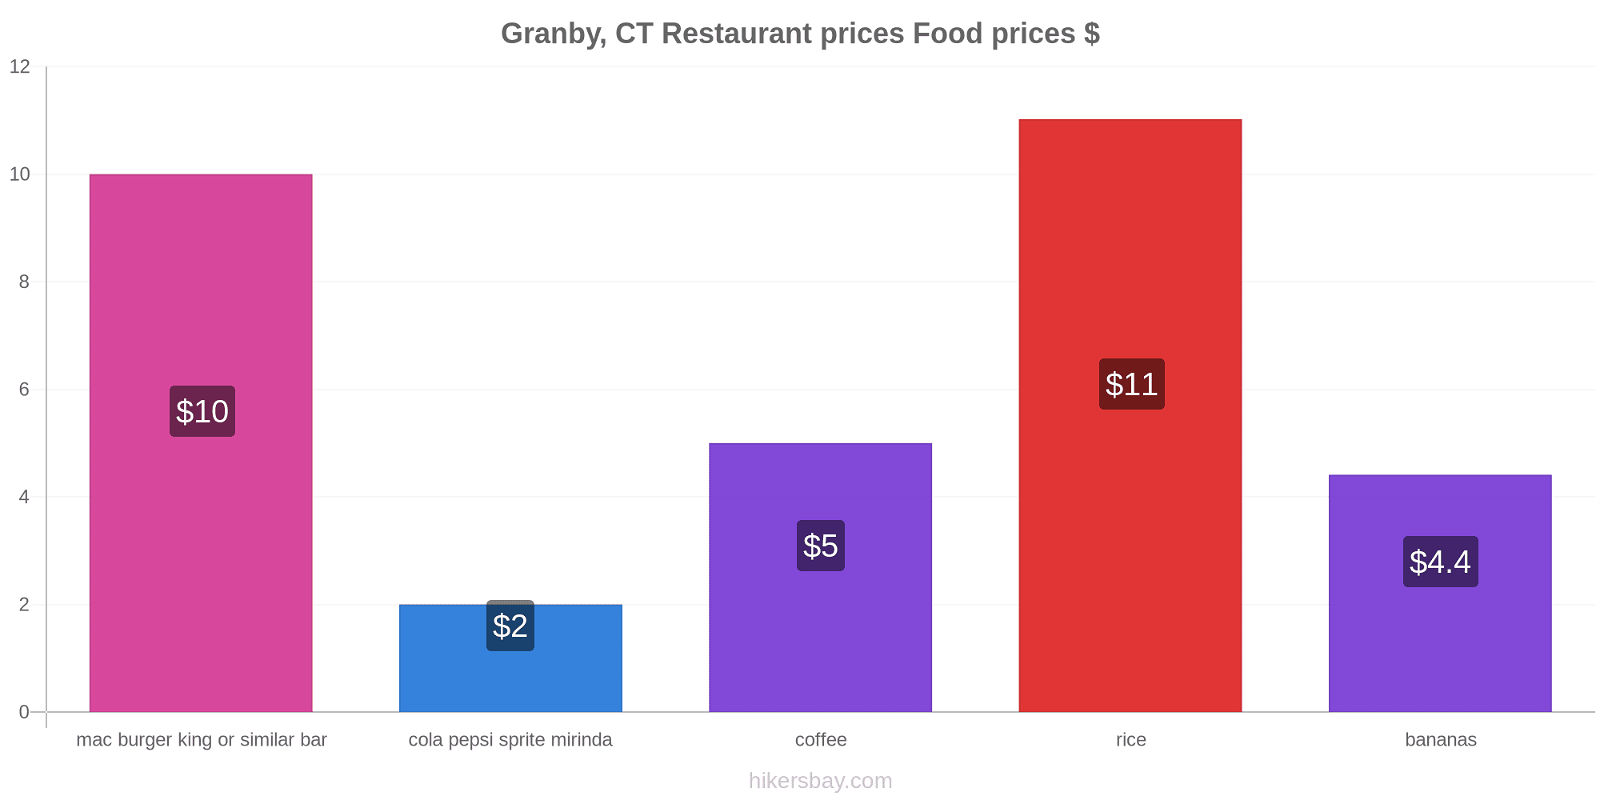 Granby, CT price changes hikersbay.com